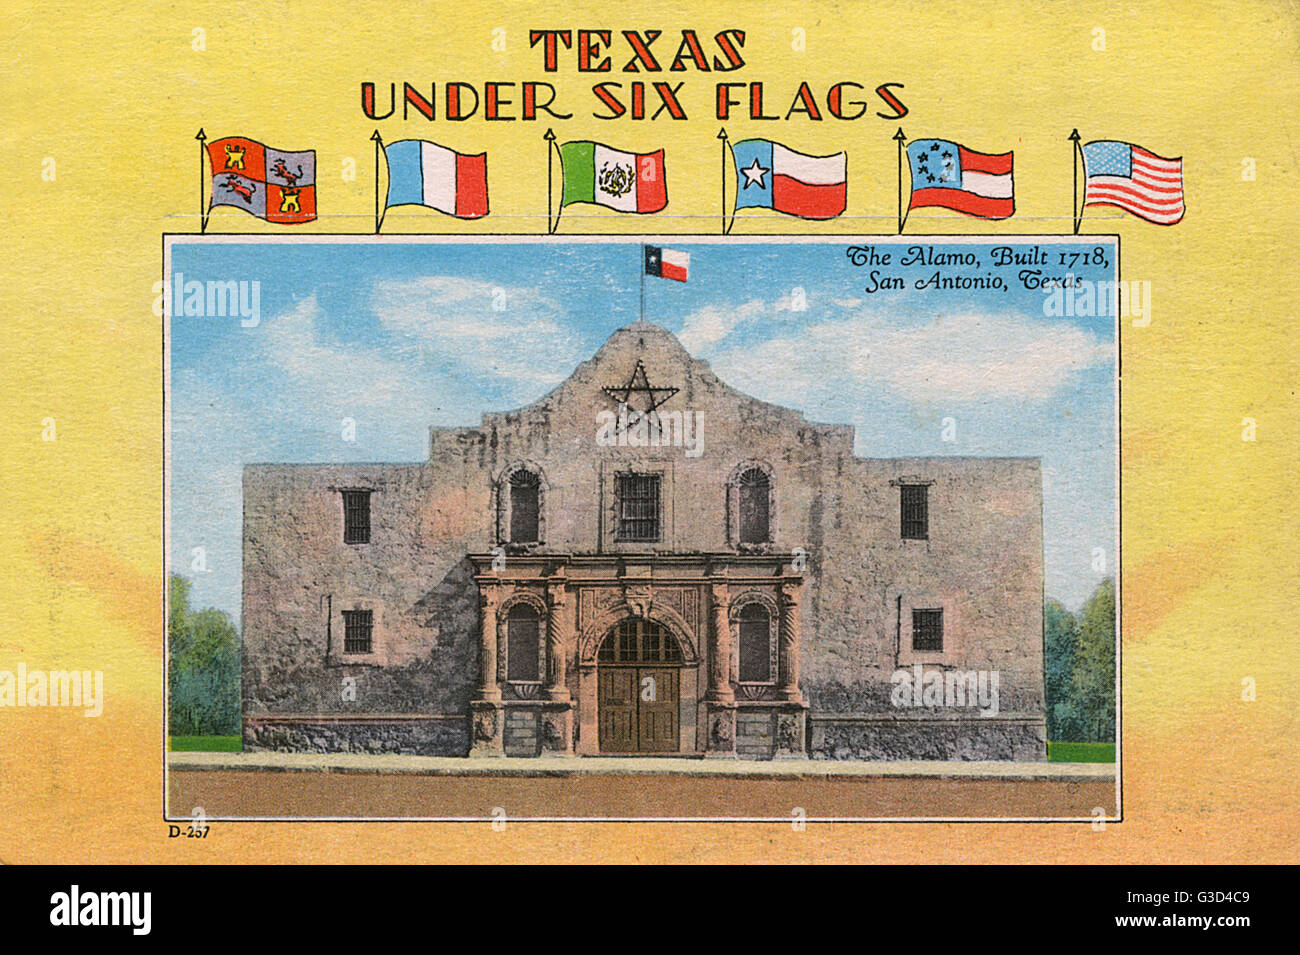 Texas unter Six Flags, zeigt The Alamo, San Antonio, Texas, USA. Ursprünglich war es eine römisch-katholische Mission der Szene des Kampfes während der Texas Revolution von 1836.      Datum: 1920er Jahre Stockfoto